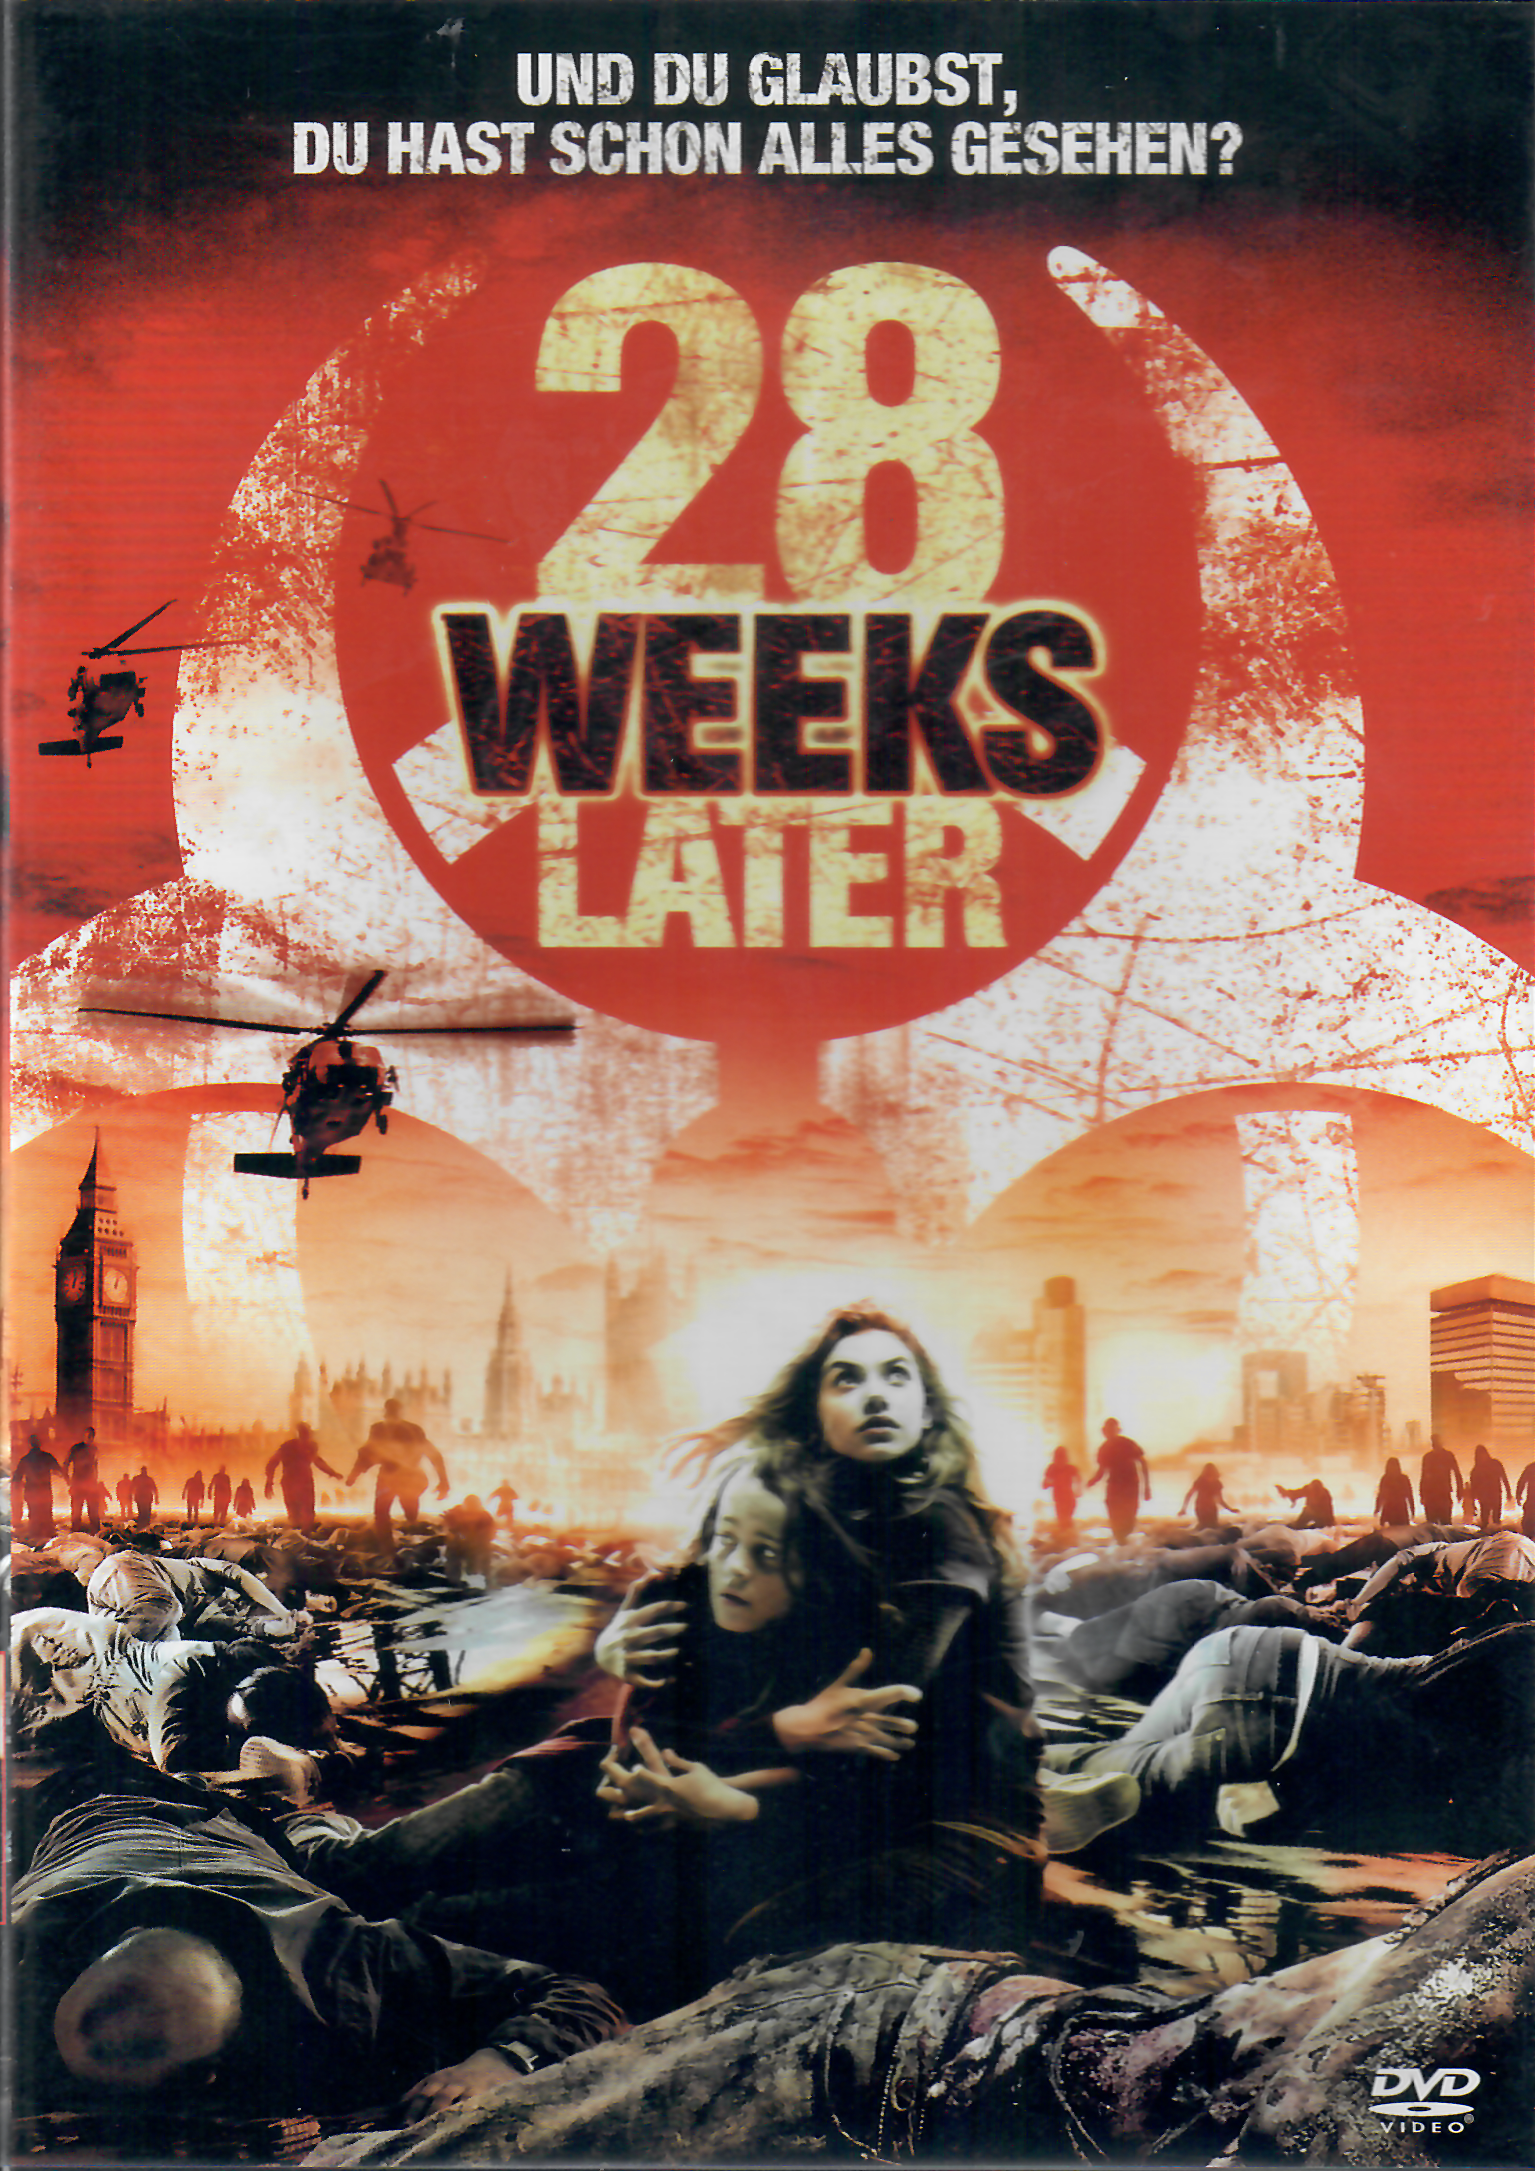 DVD 28 Weeks later - Und du glaubst, du hast schon alles gesehen?